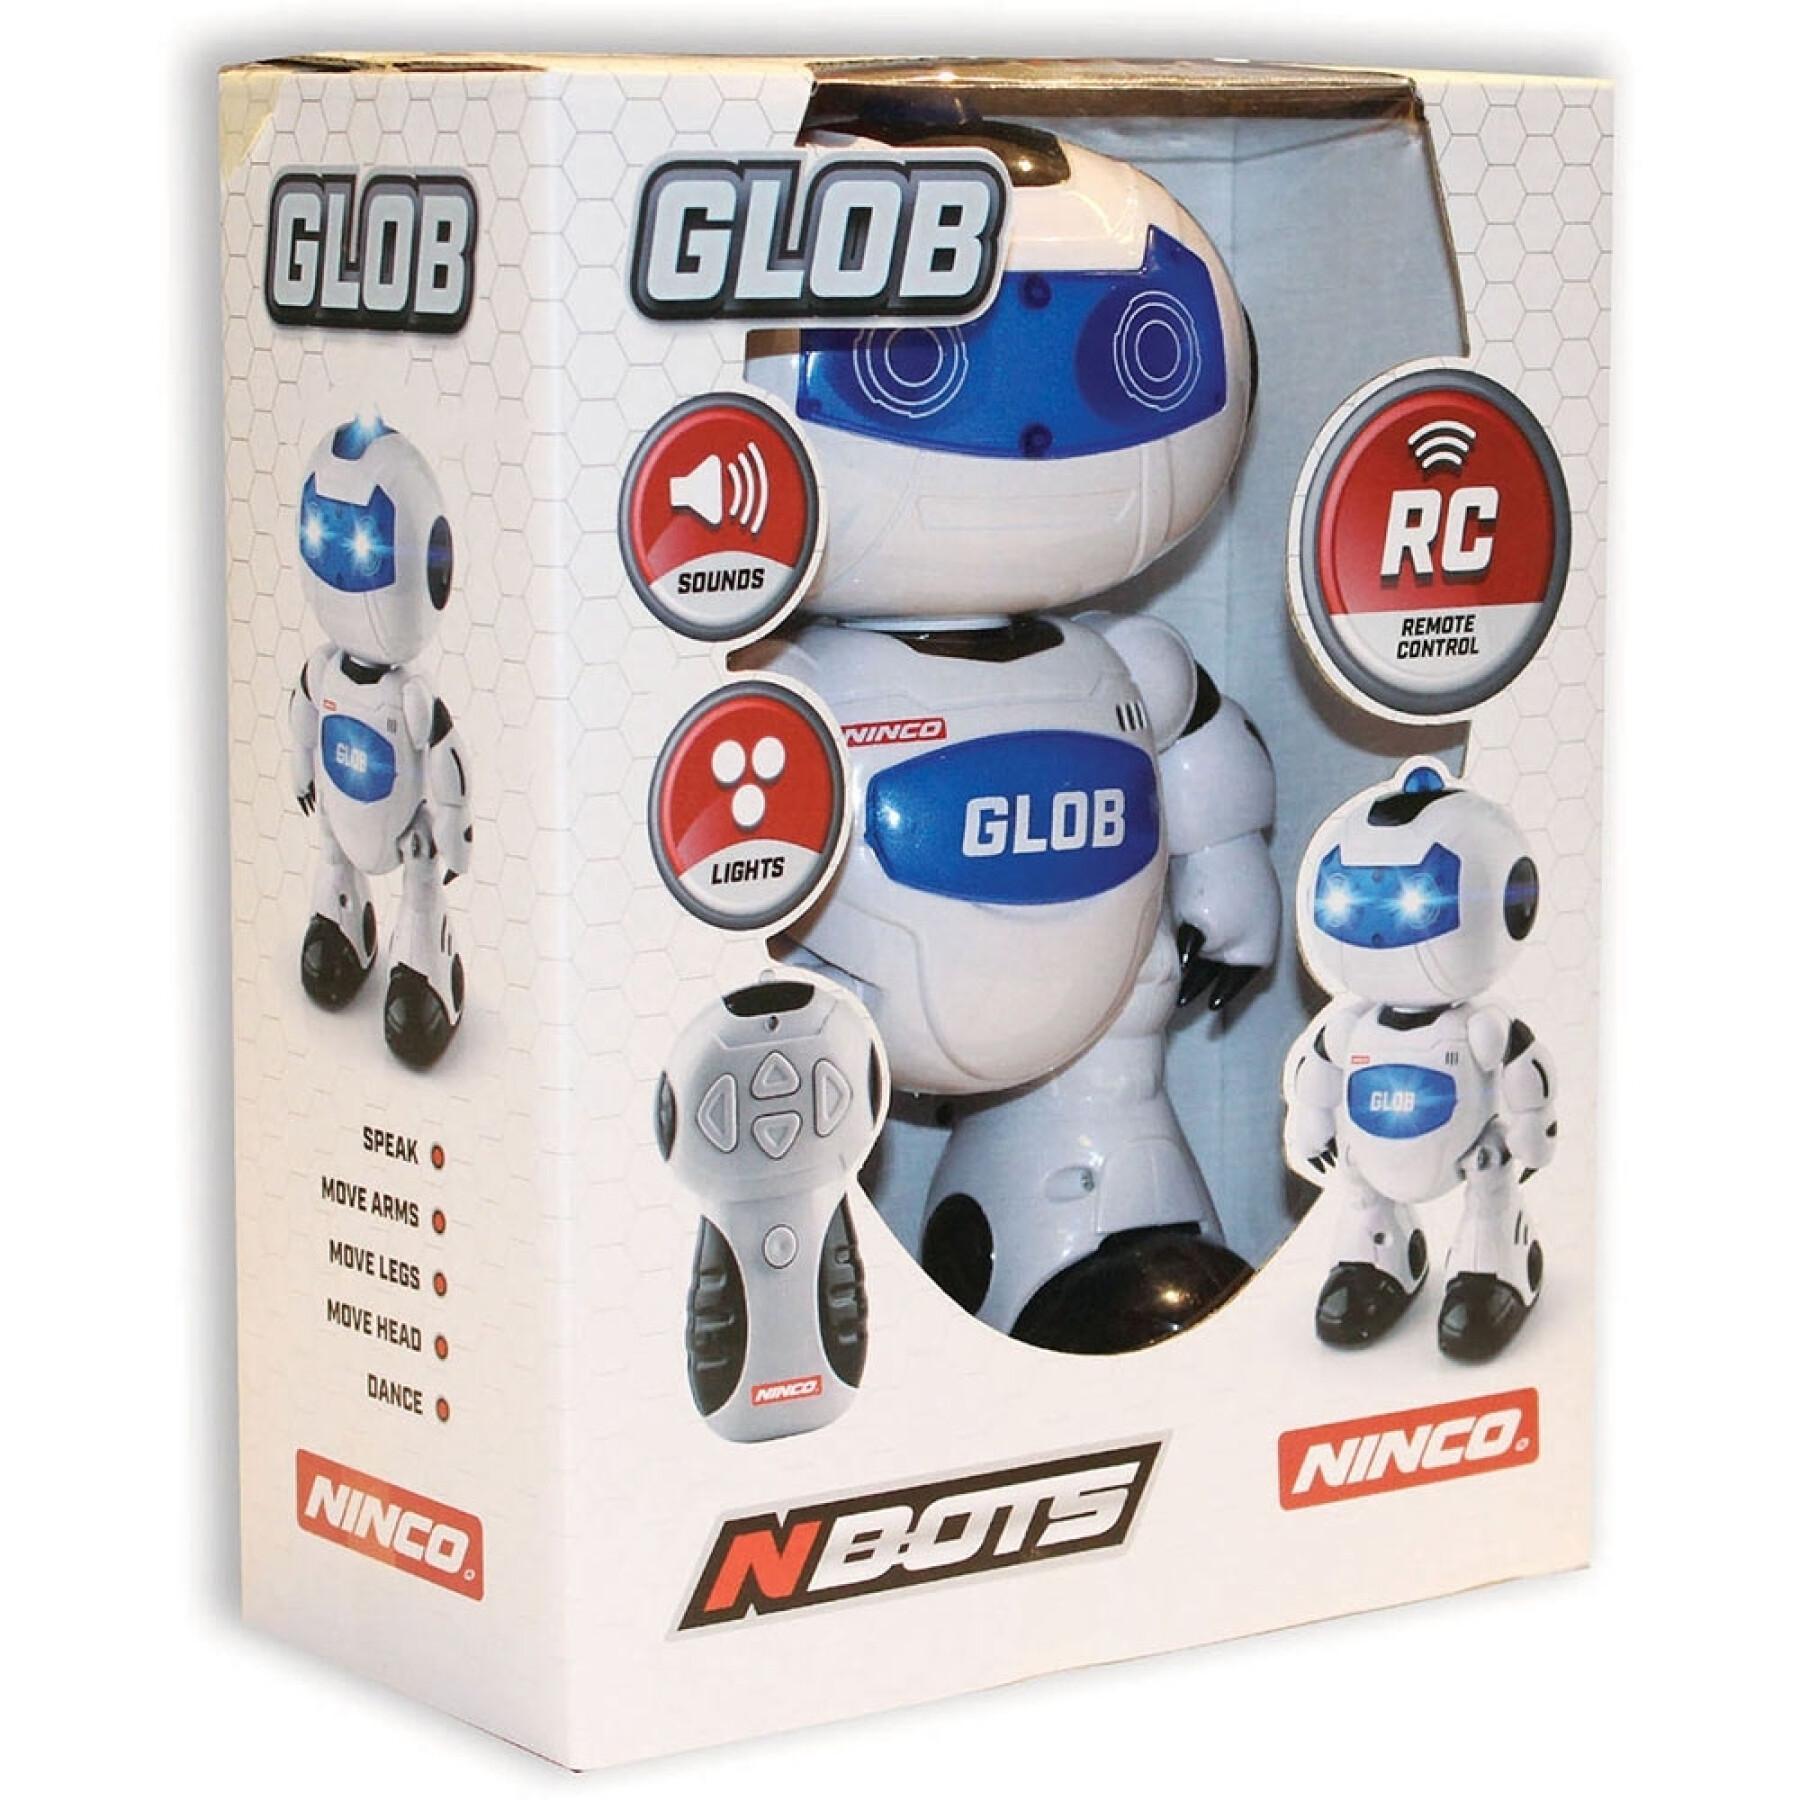 Robô de controlo remoto que fala inglês Ninco Glob